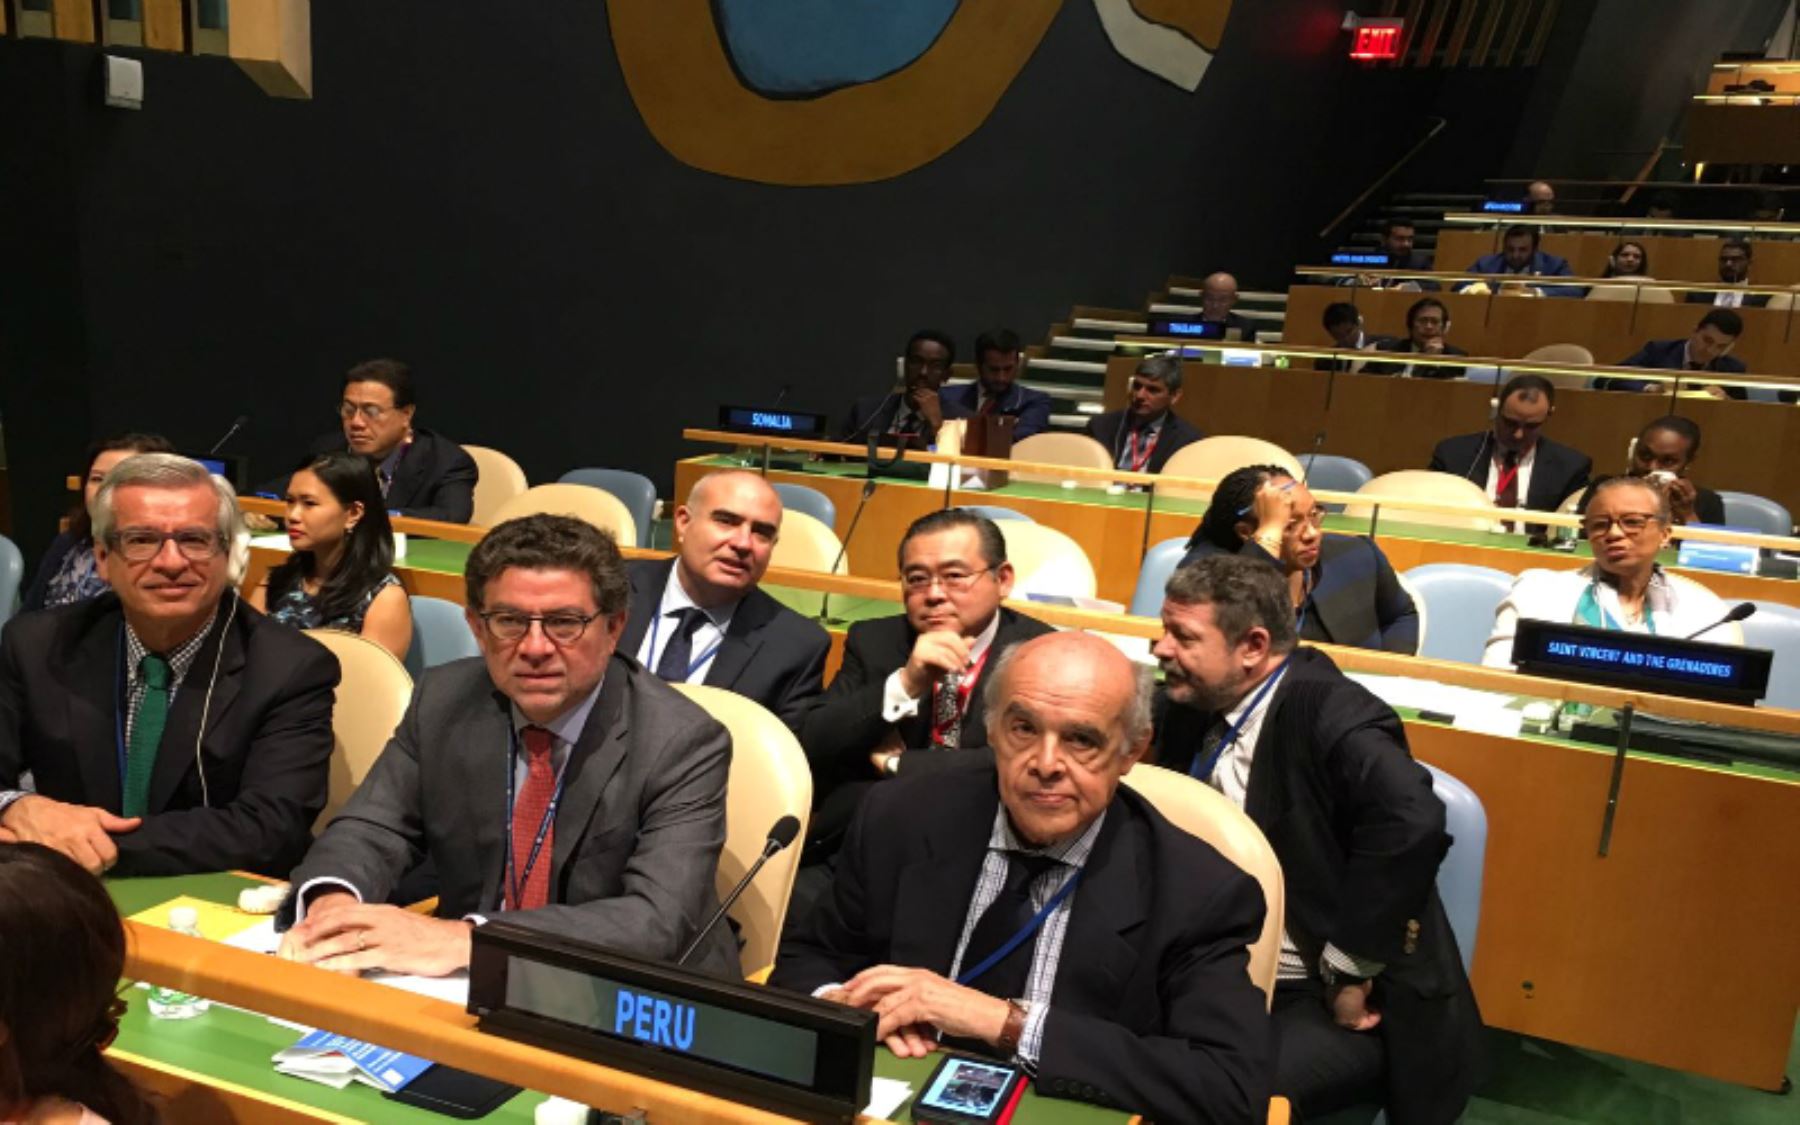 Perú es elegido miembro no permanente del Consejo de Seguridad de la ONU